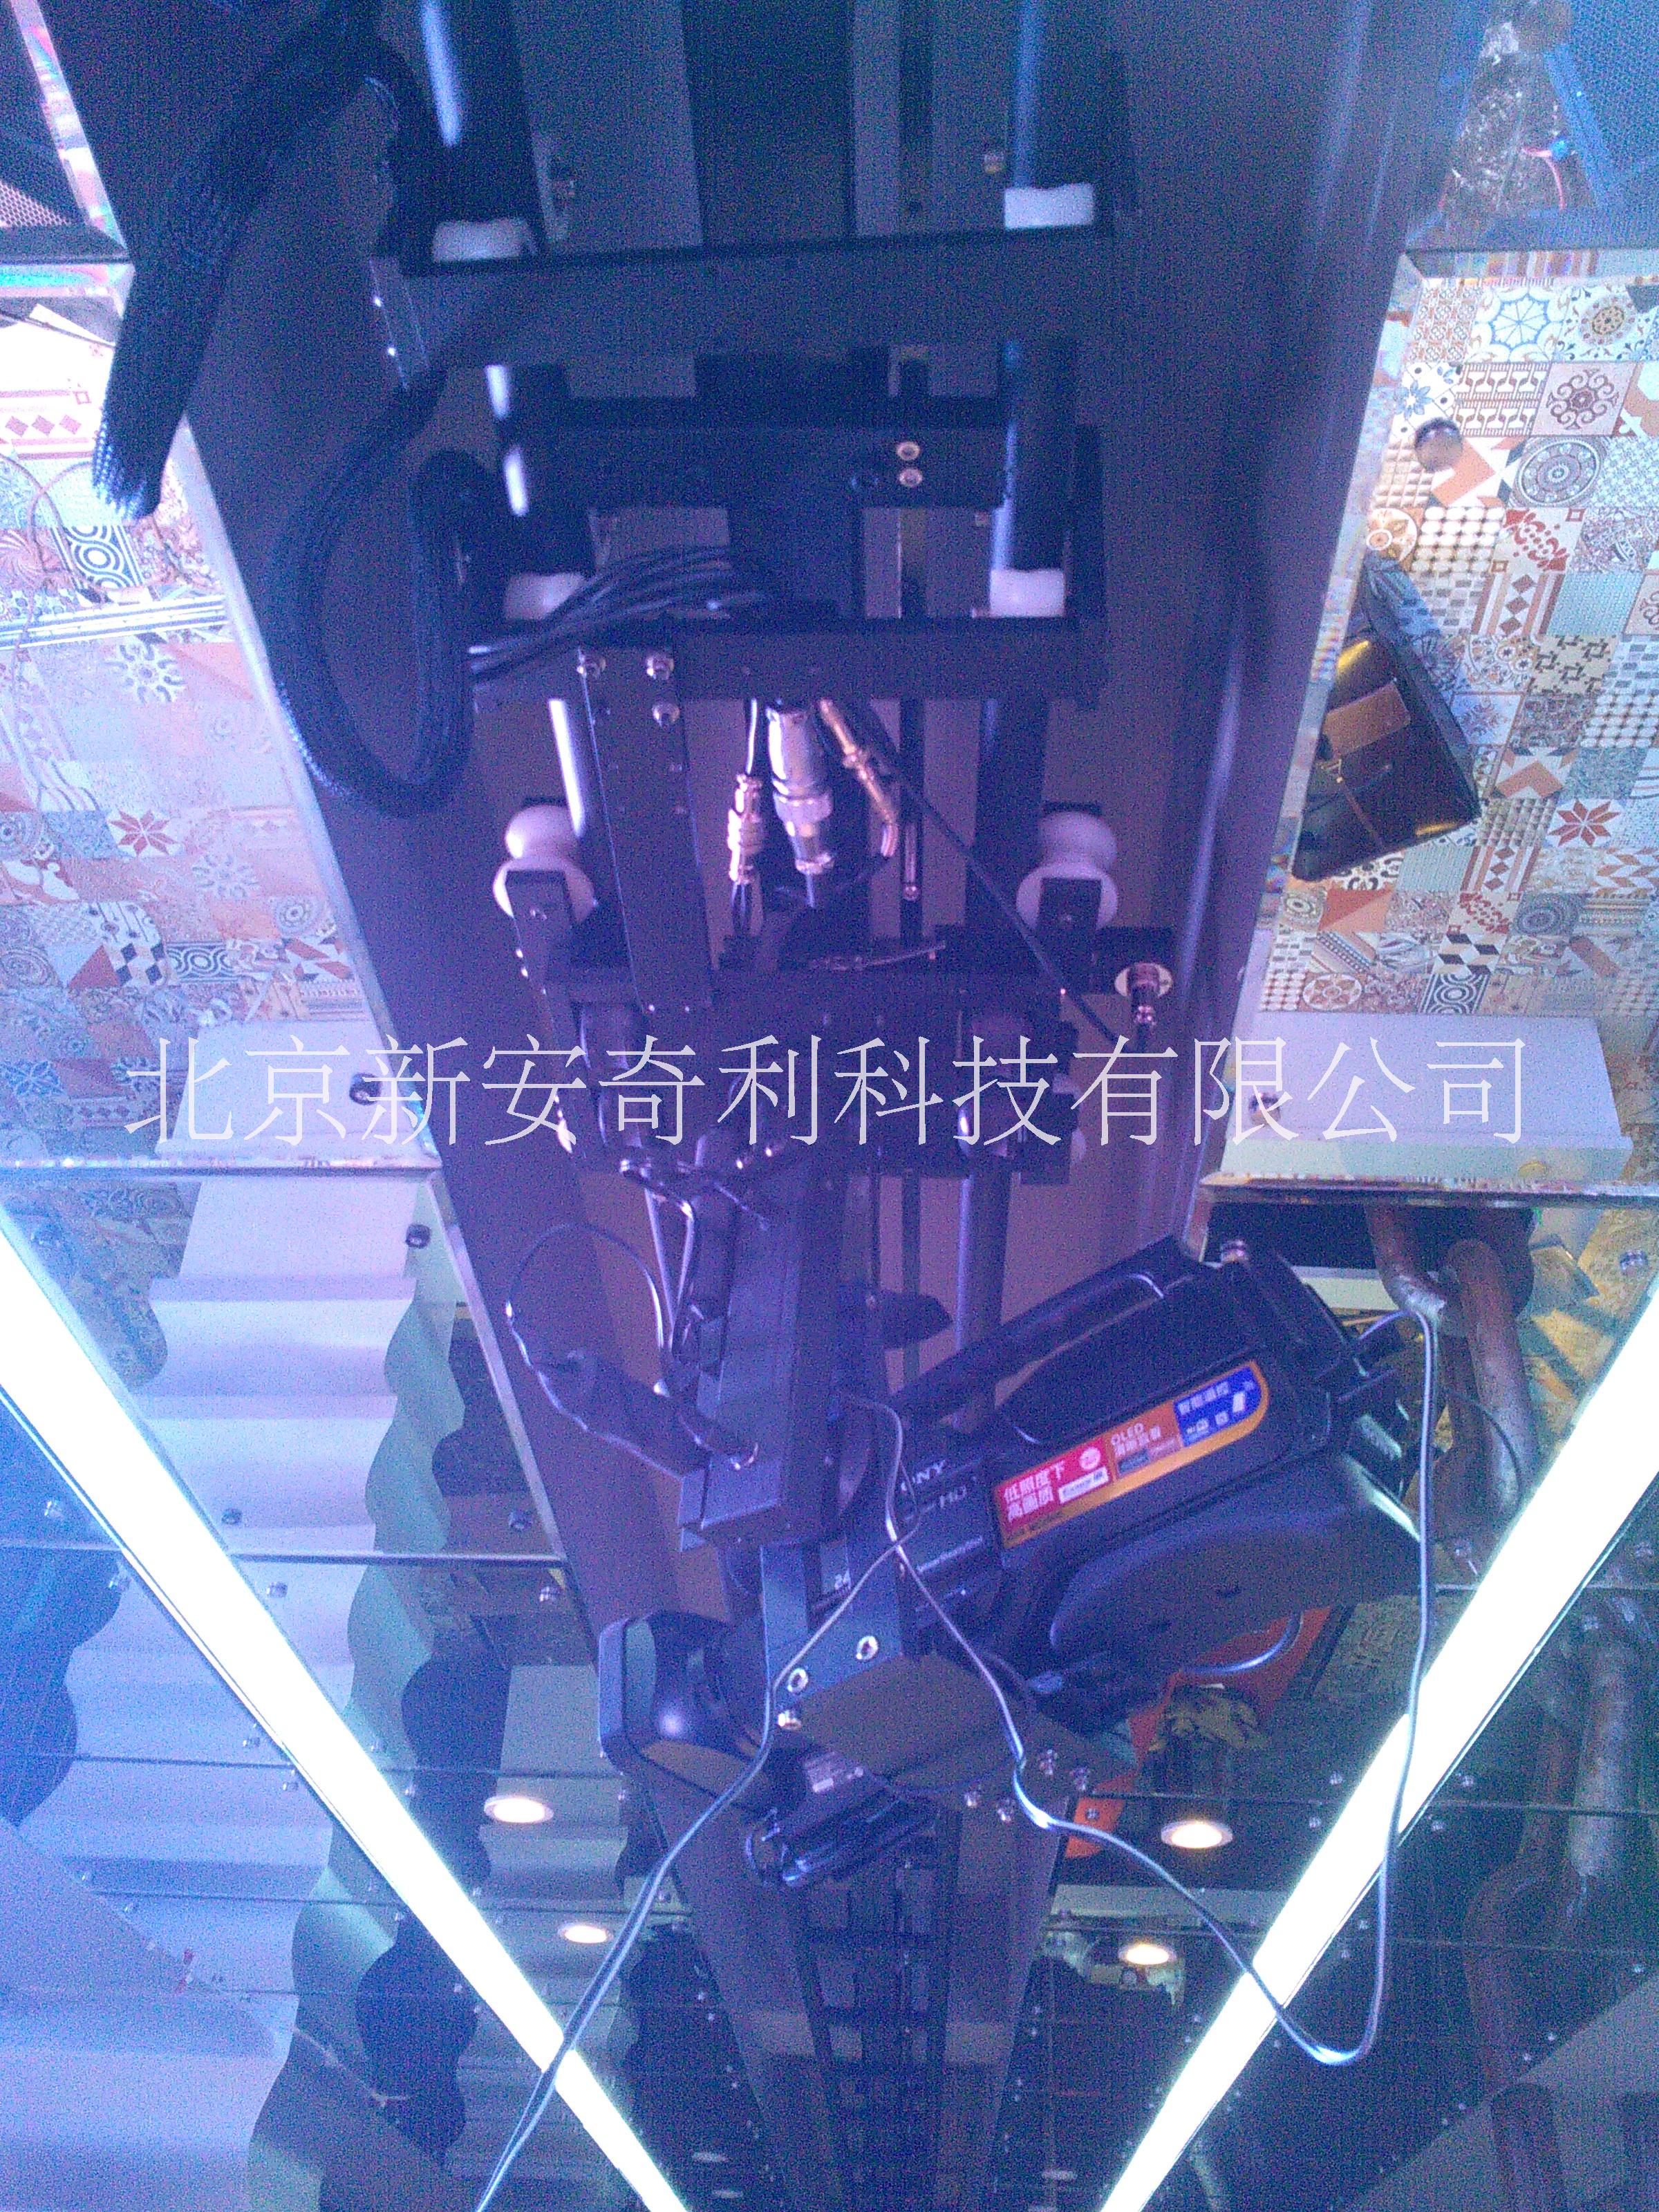 北京摄像摇臂出租，北京摄像摇臂出租公司，北京摄像摇臂出租价格